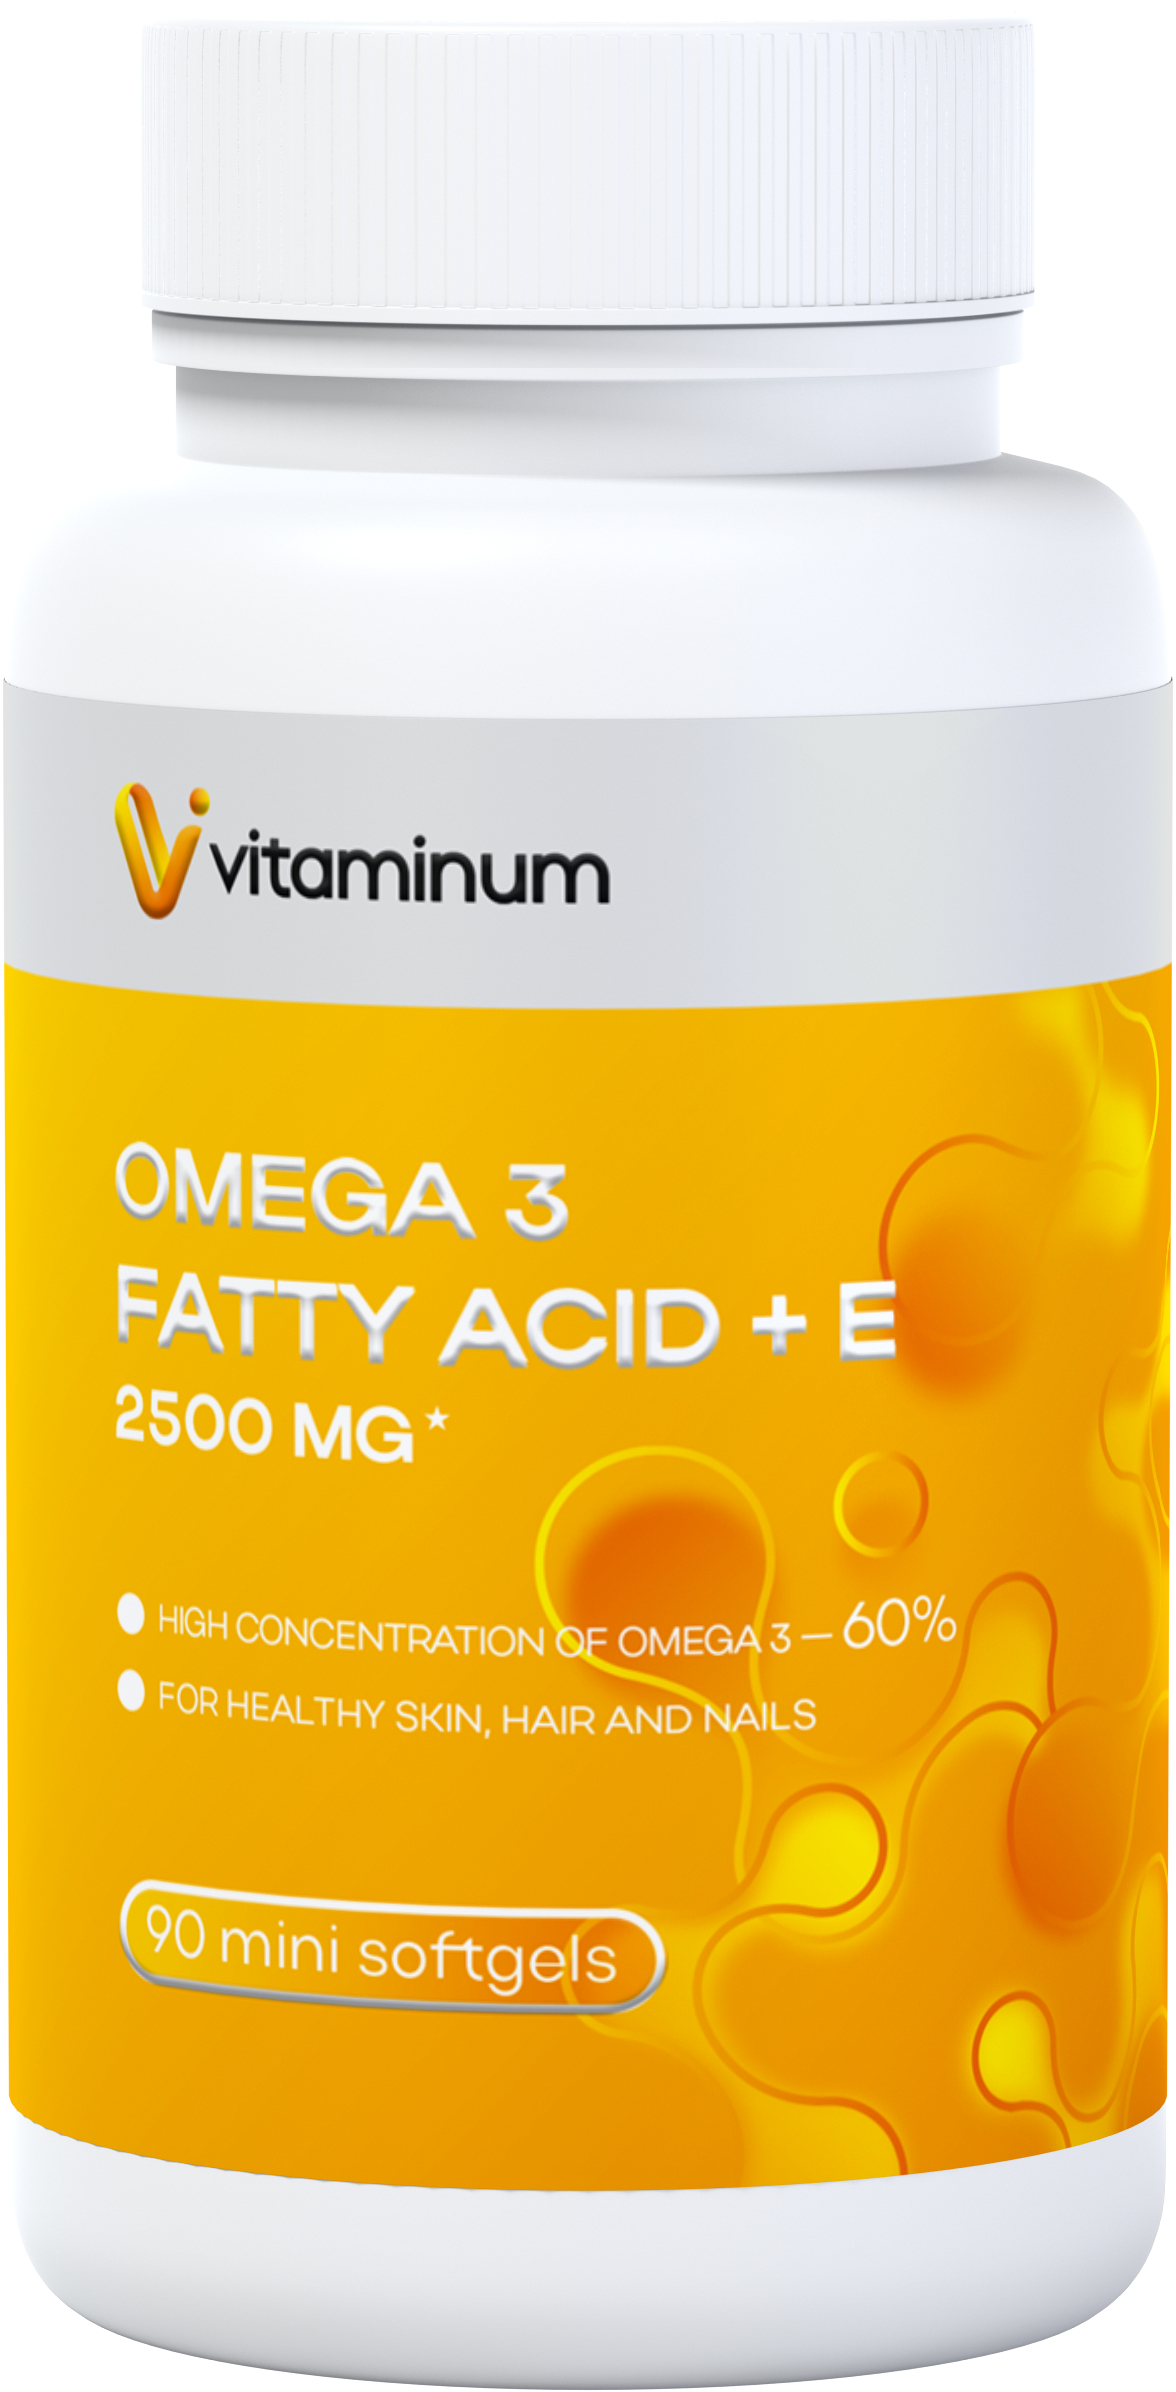  Vitaminum ОМЕГА 3 60% + витамин Е (2500 MG*) 90 капсул 700 мг   в Березниках